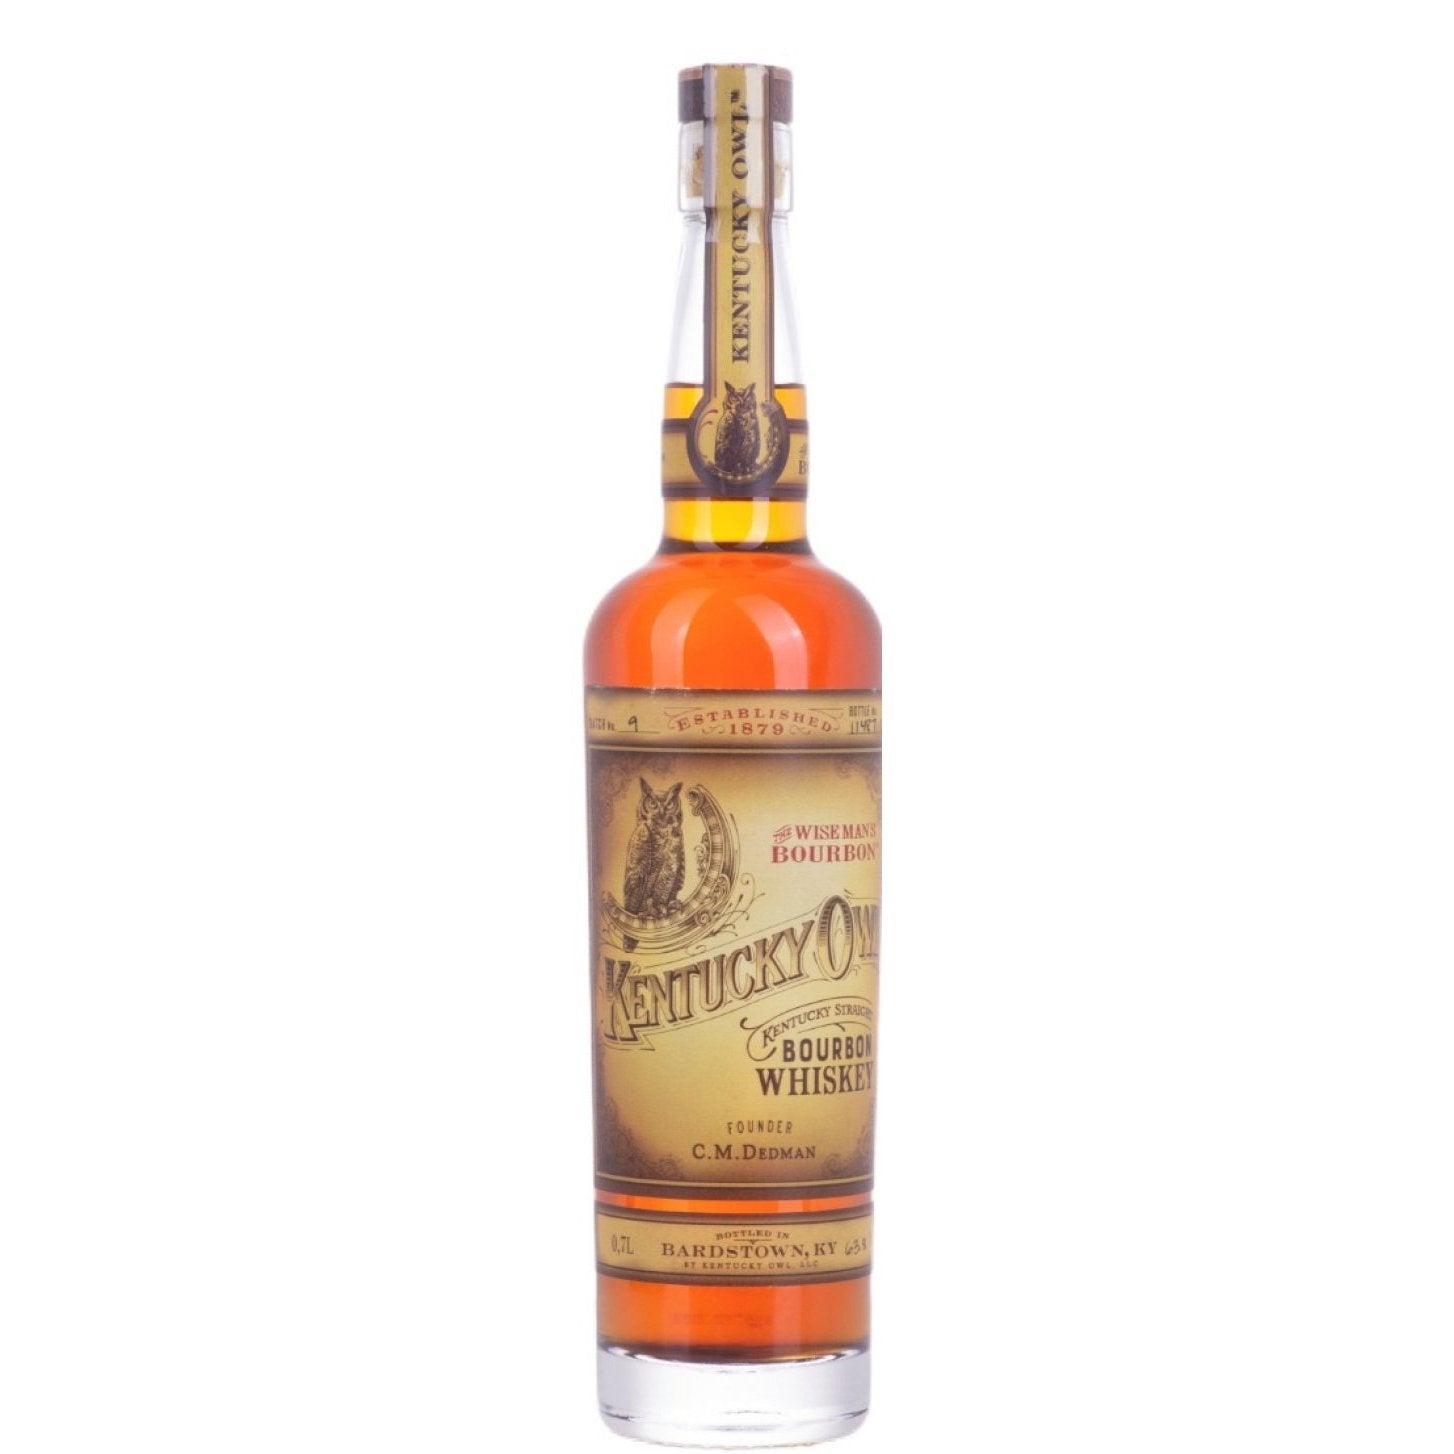 Kentucky Owl Kentucky Straight BOURBON Whisky Batch No. 9 63,8% Vol. 0,7l